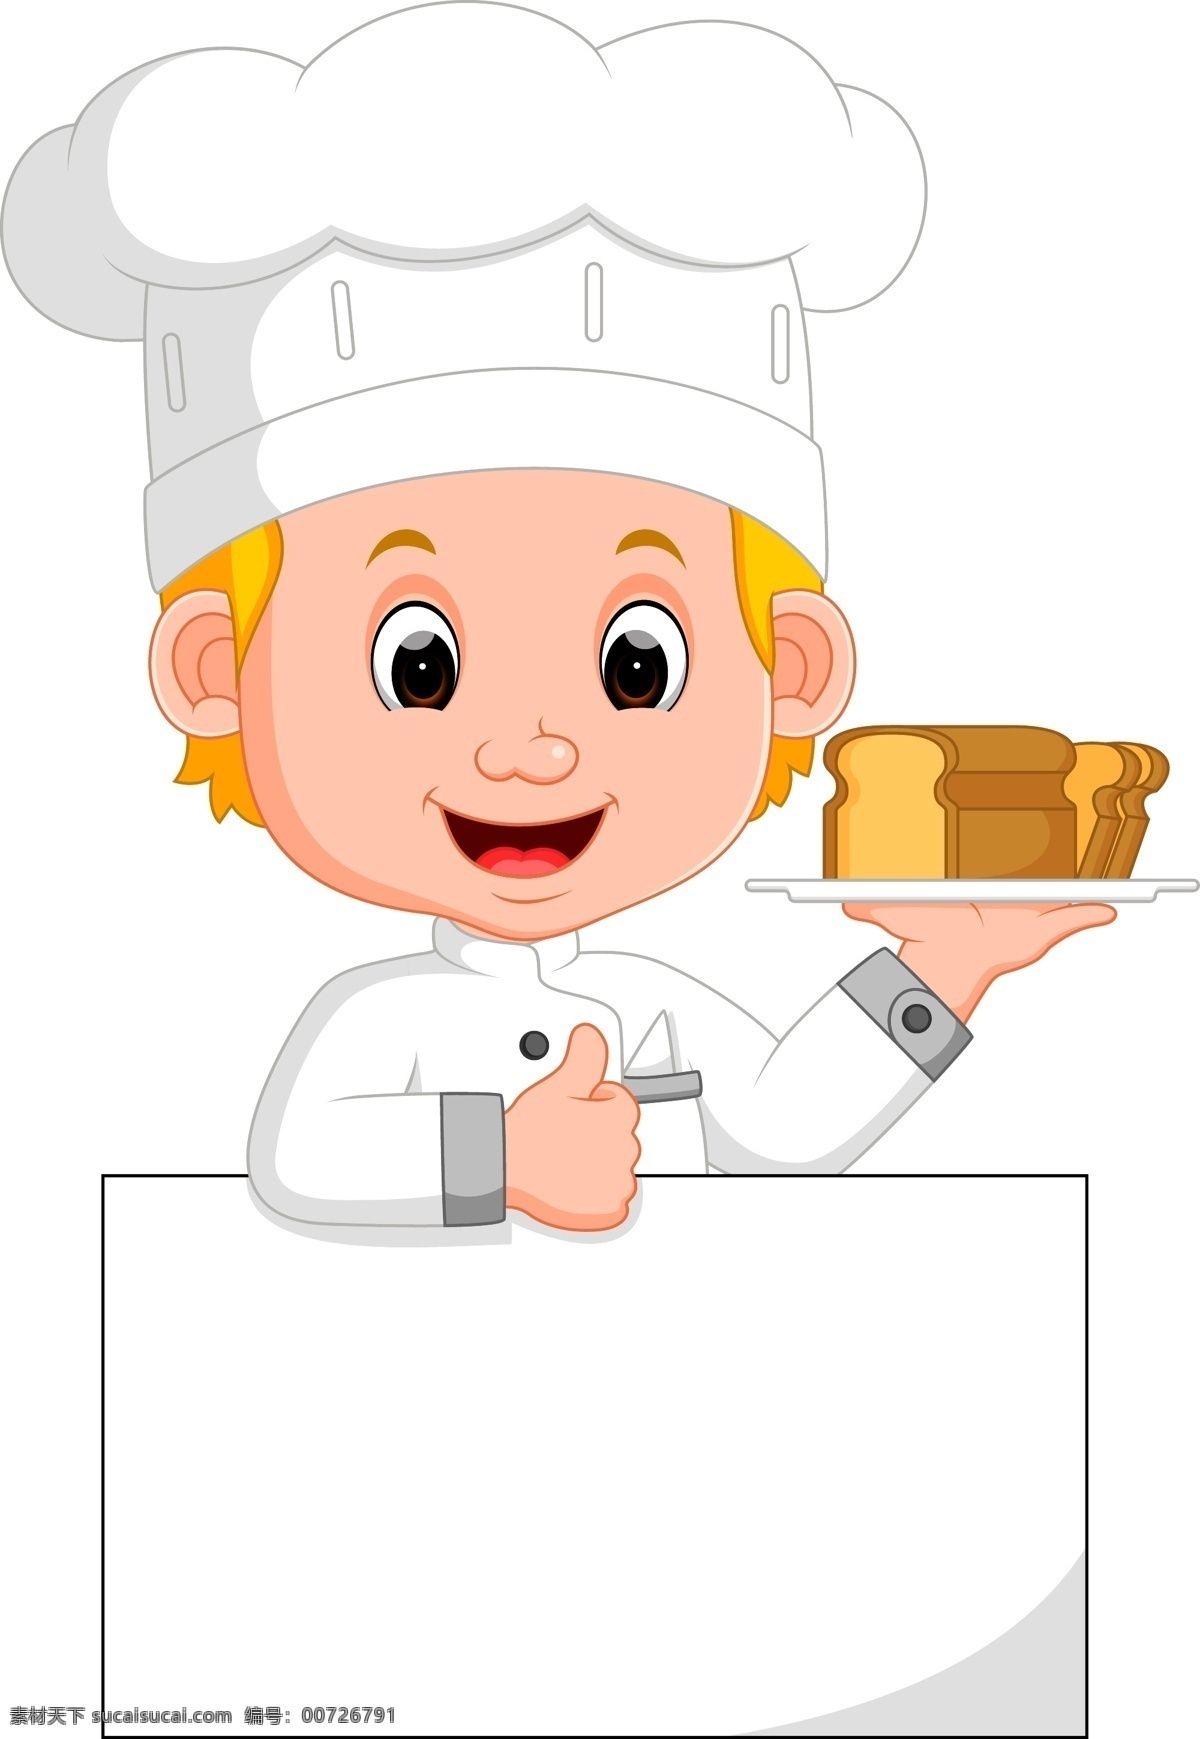 端 面包 厨师 面前 空白 广告 卡通厨师 小厨师 厨师帽 可爱儿童 餐盘 西餐 白纸 广告牌 职业 服务员 卡通人物 动漫动画 动漫人物